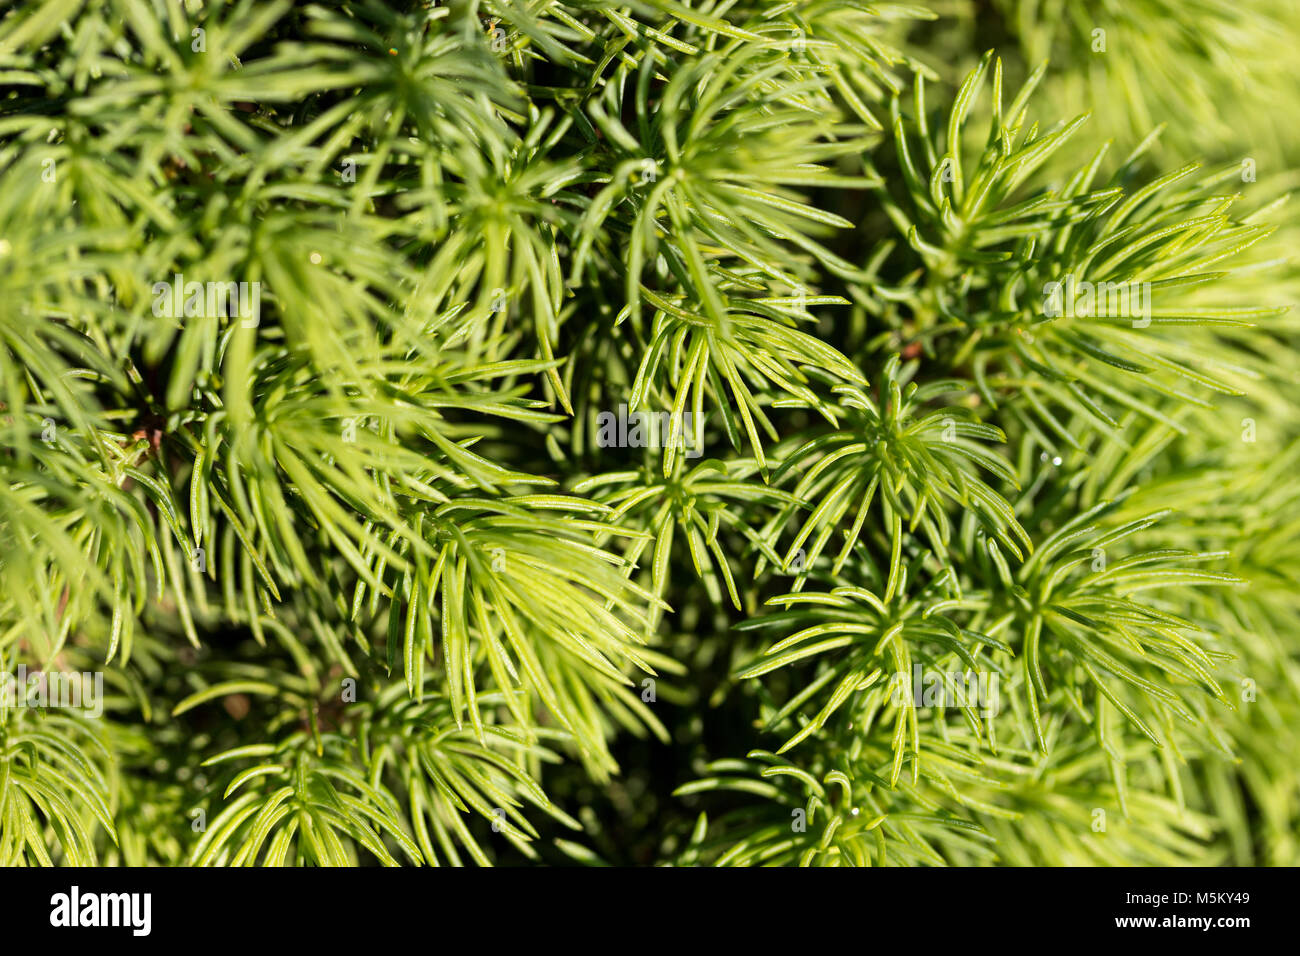 Fir tree branch texture Stock Photo